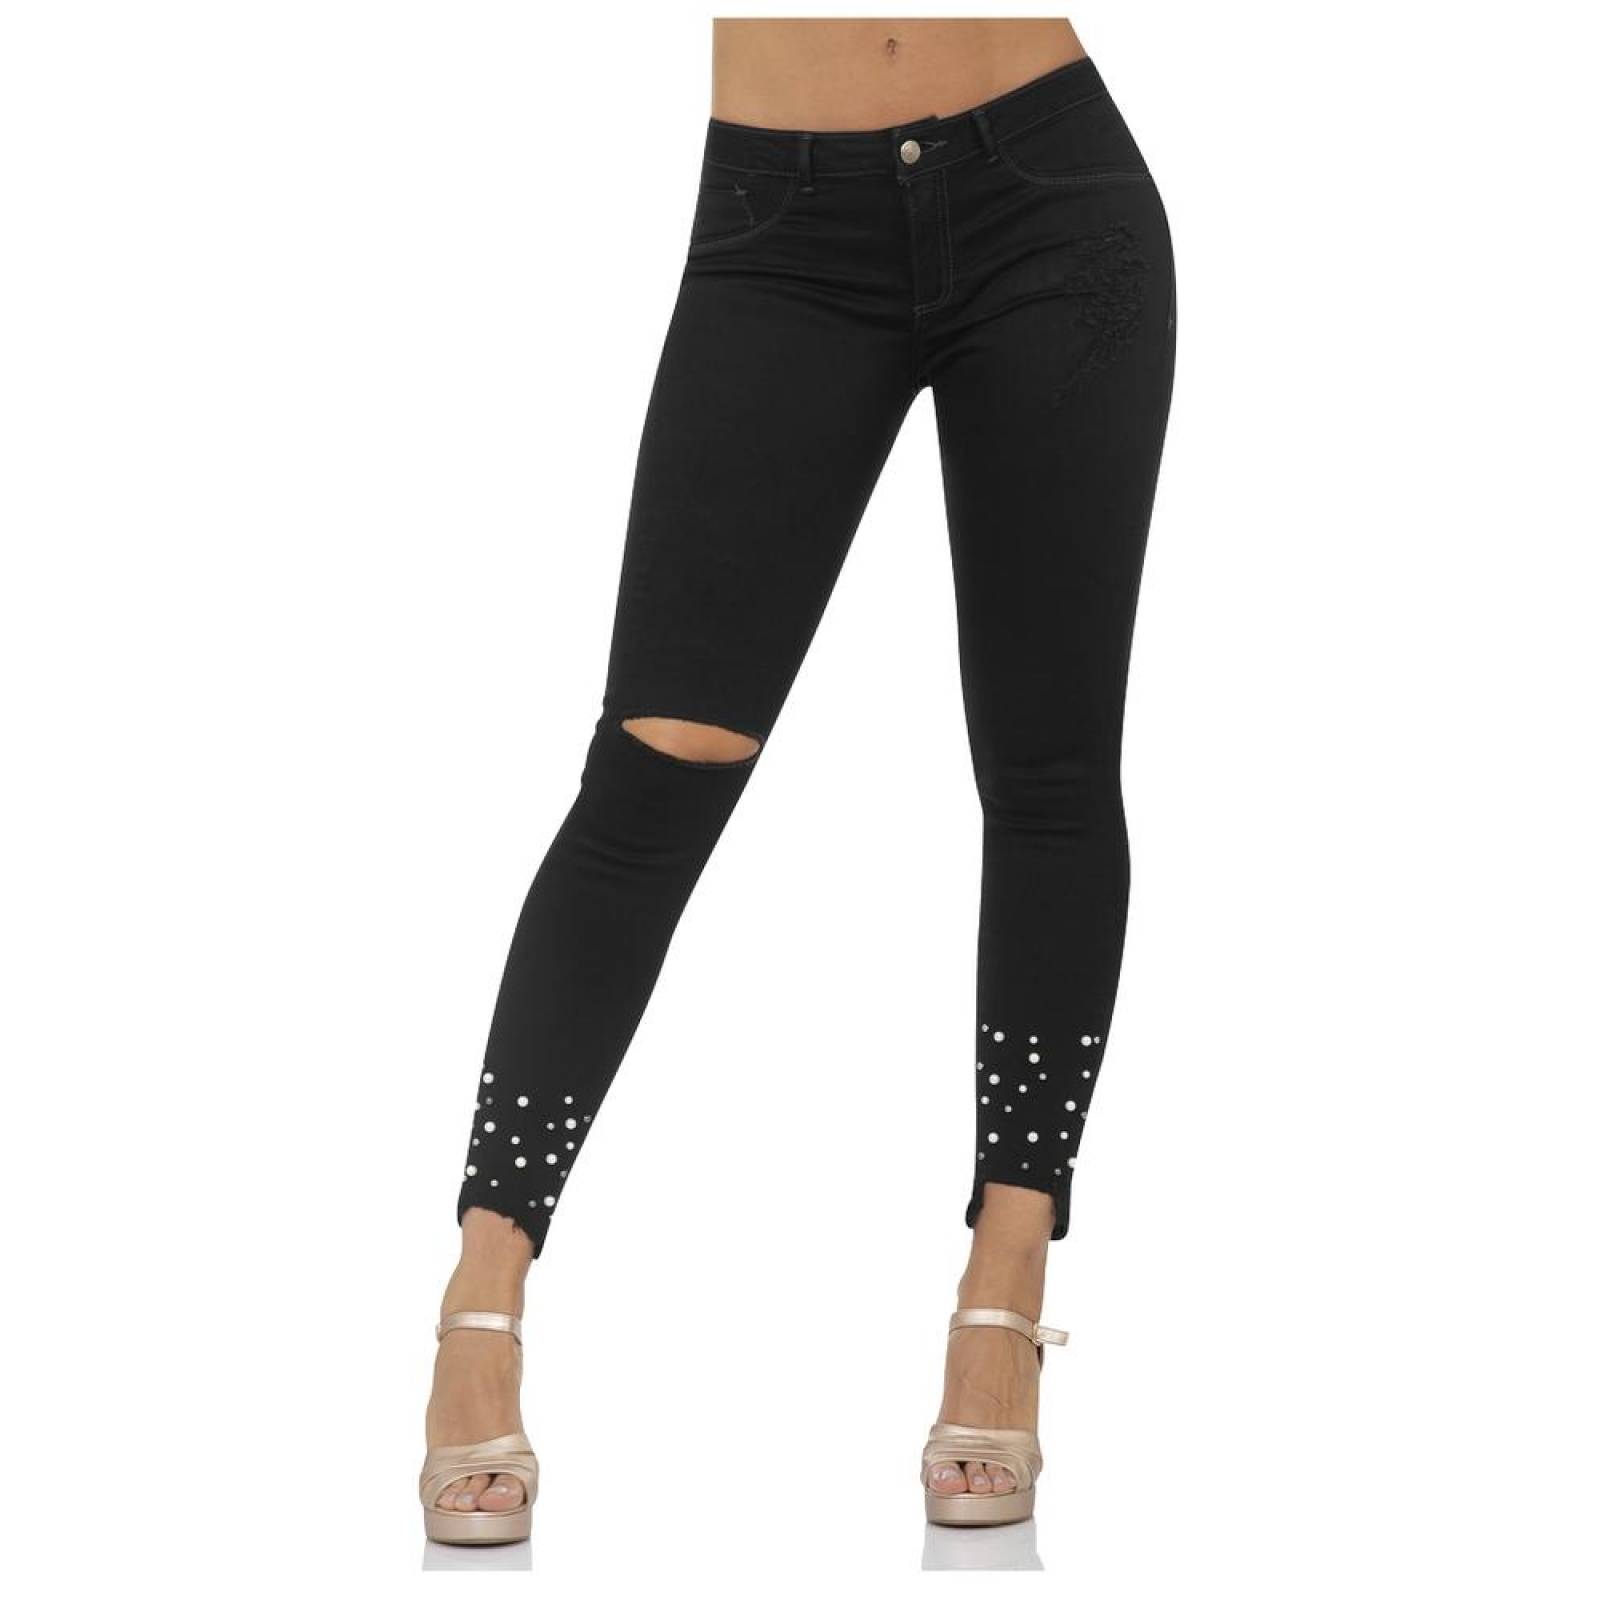 Jeans Moda Mujer Salvaje Tentación Negro 63103204 Mezclilla Stretch 